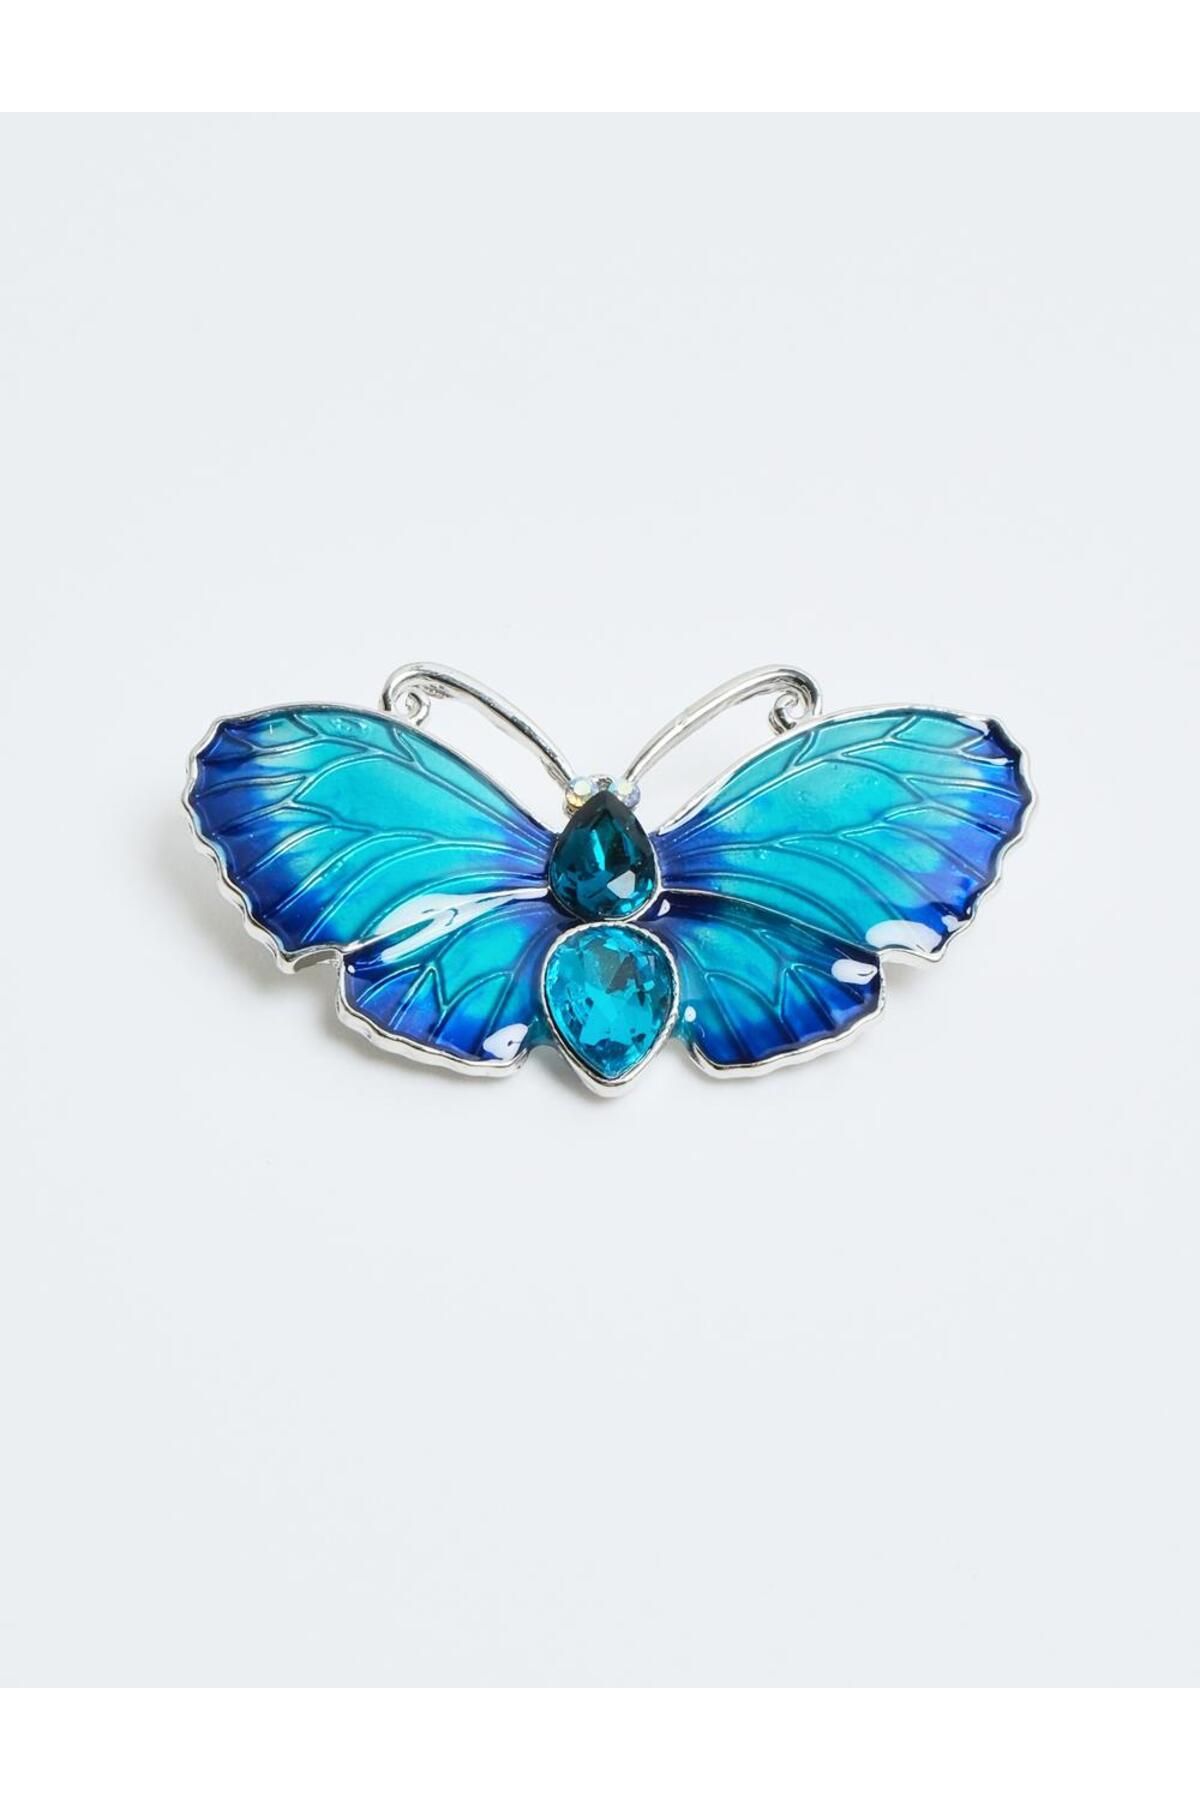 Jimmy Key Mavi Taşlı Kelebek Figürlü Broş